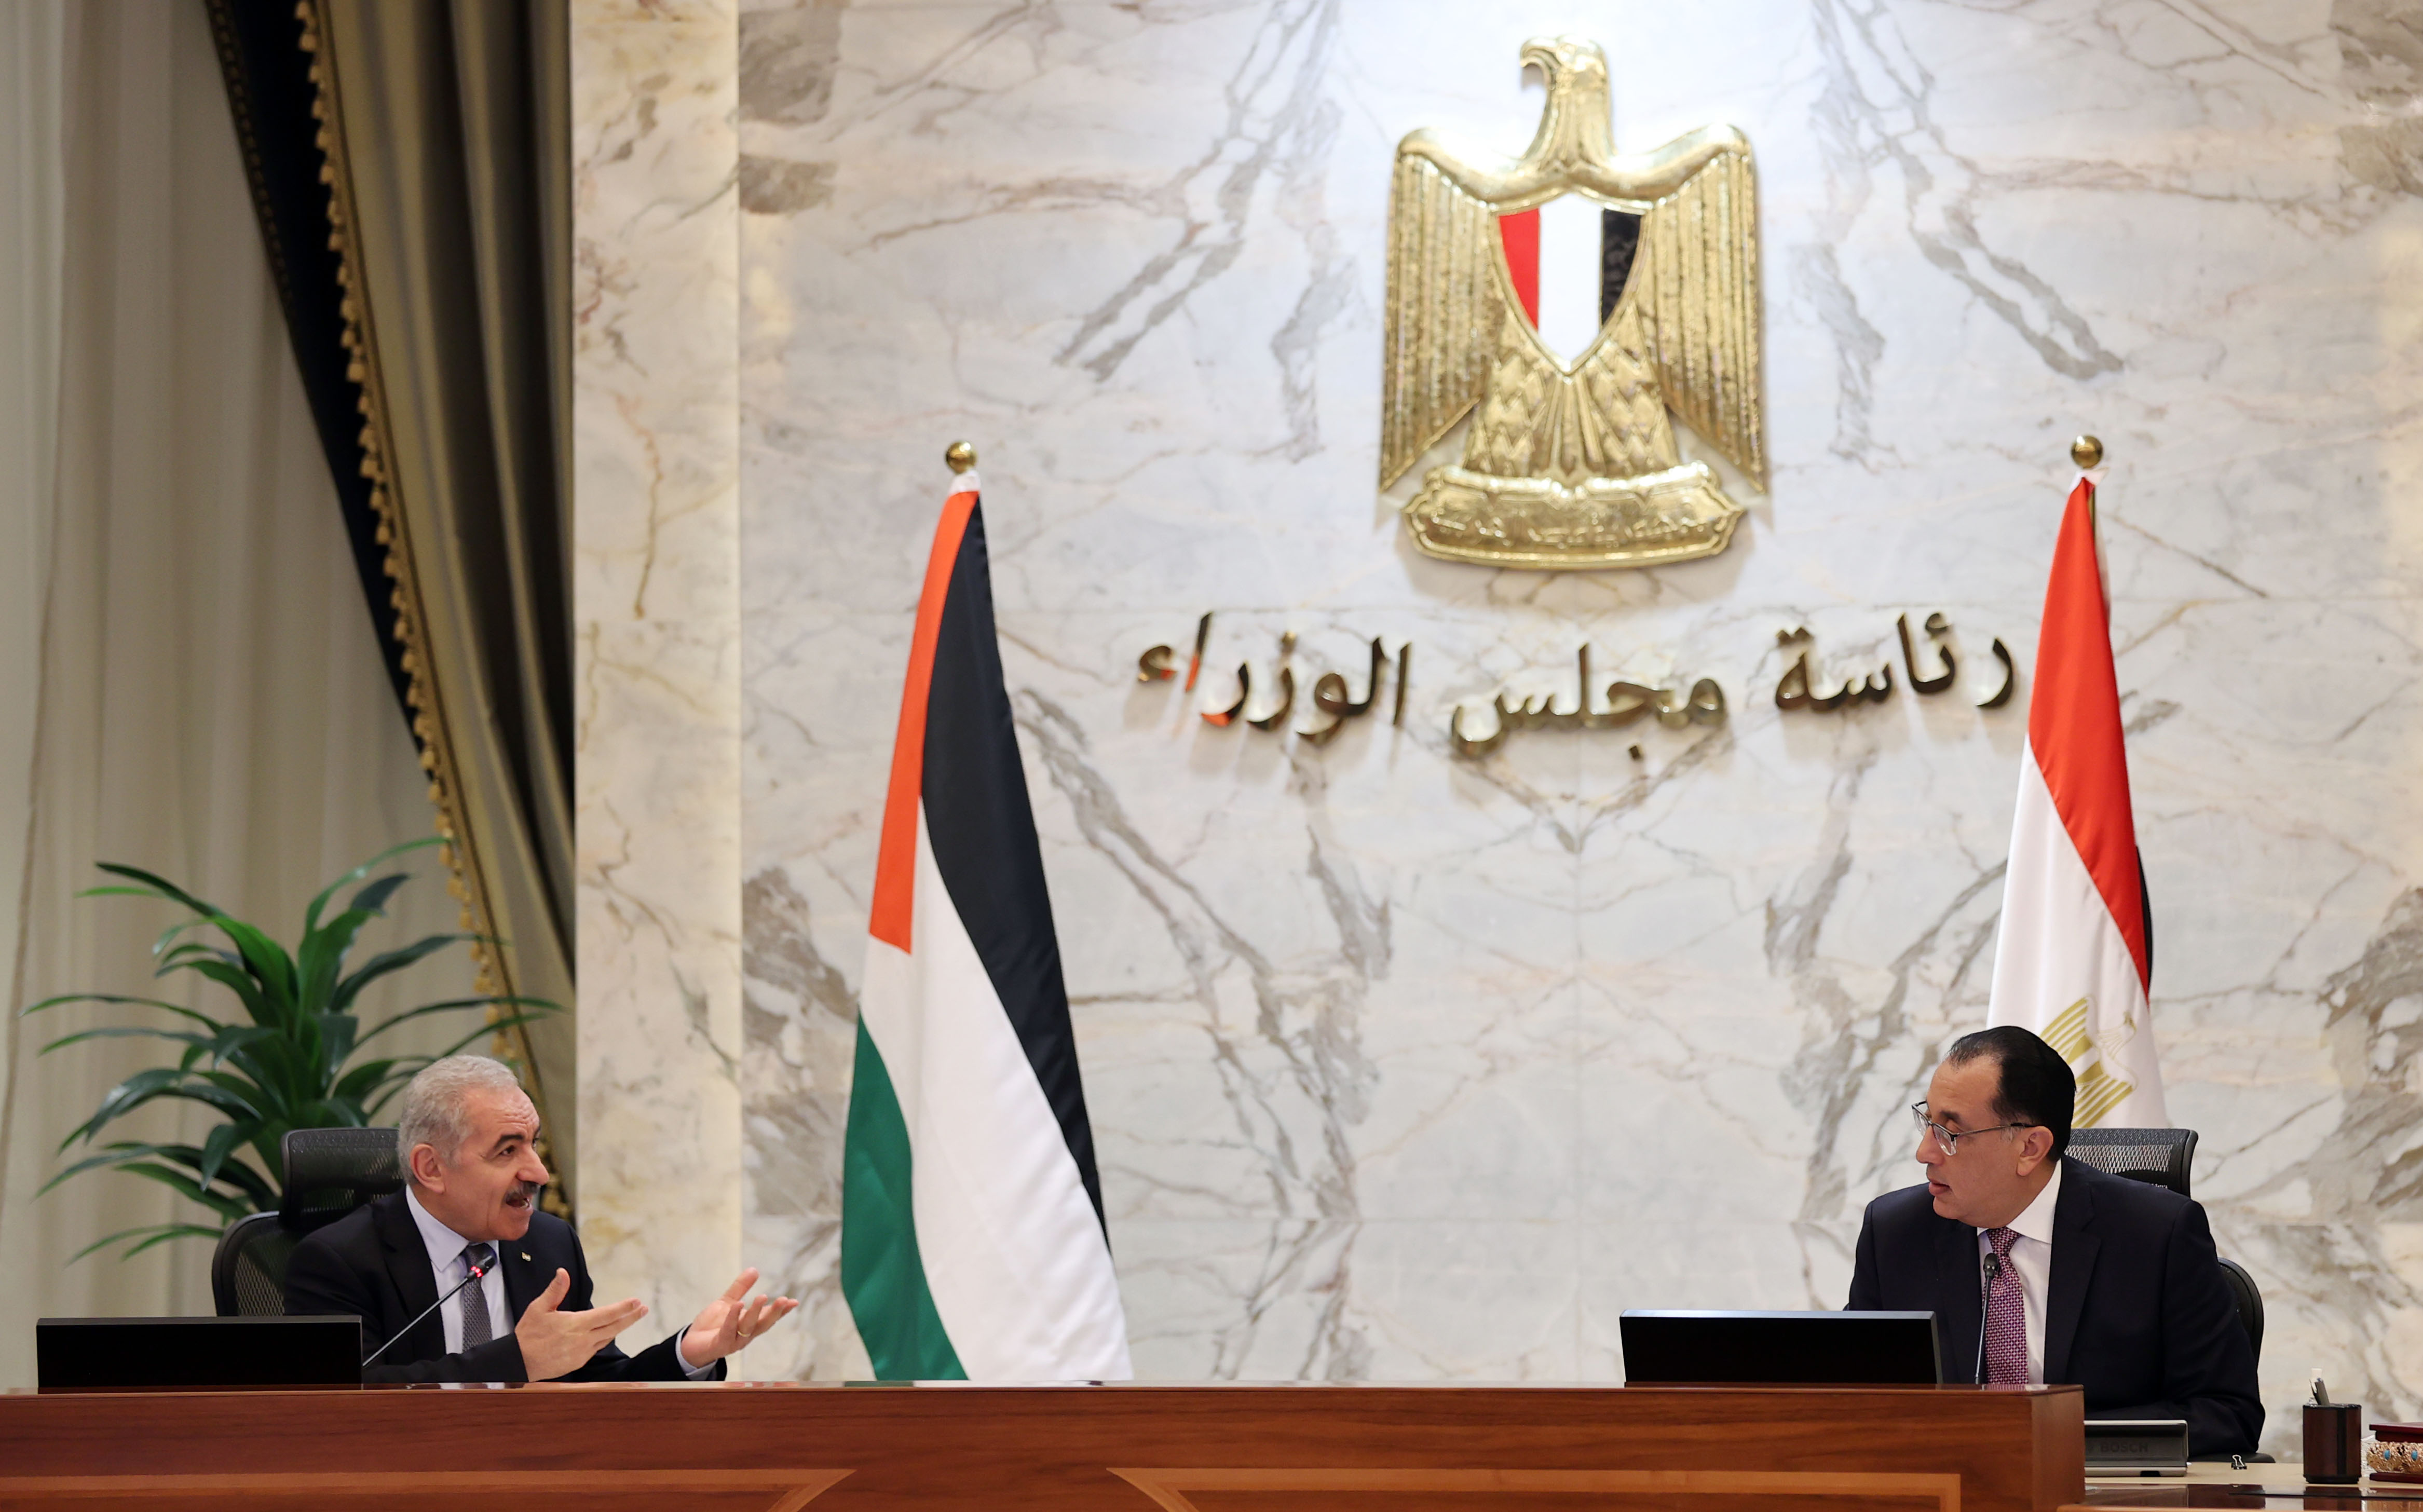 لقاء موسّع بين حكومتي فلسطين ومصر في العاصمة الإدارية، شهد توقيع بروتوكولات لتعزيز العلاقات الثنائية